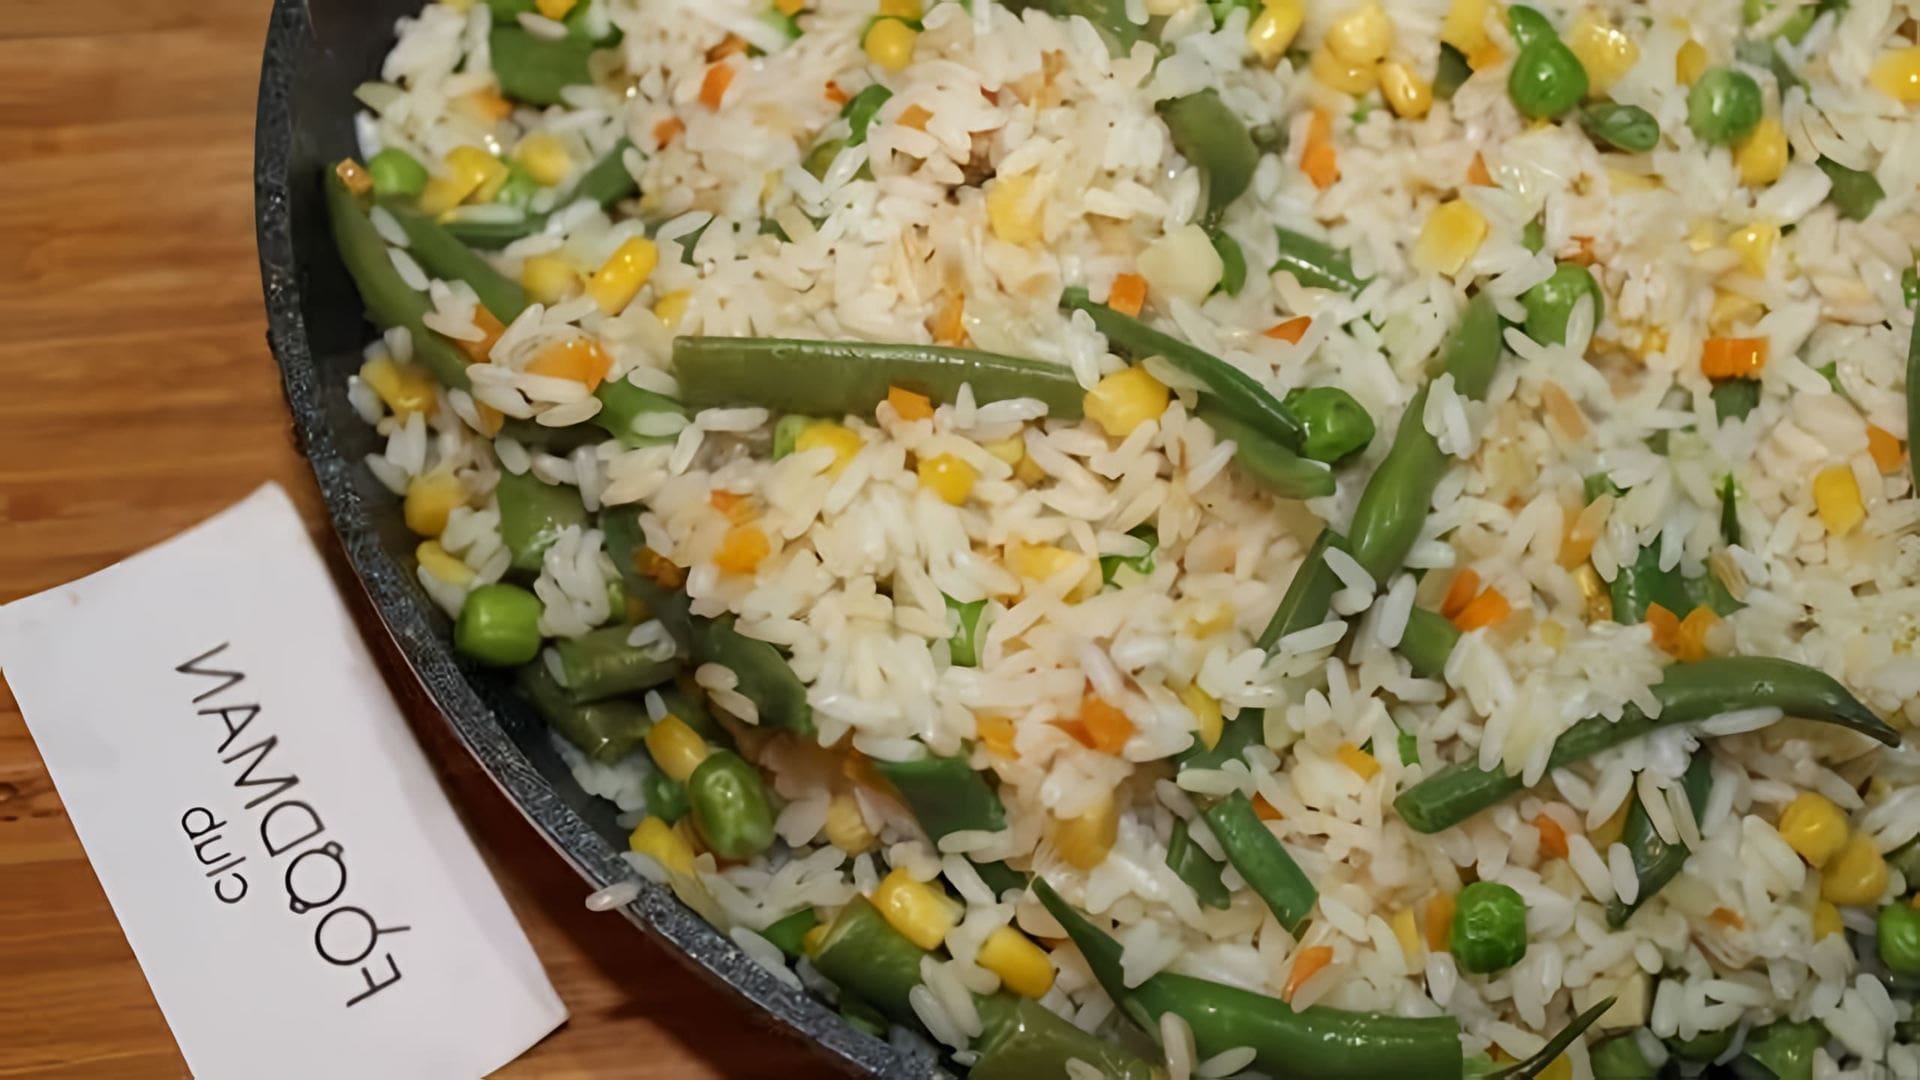 В этом видео-ролике будет представлен рецепт приготовления рассыпчатого риса с добавлением стручковой фасоли, горошка и кукурузы